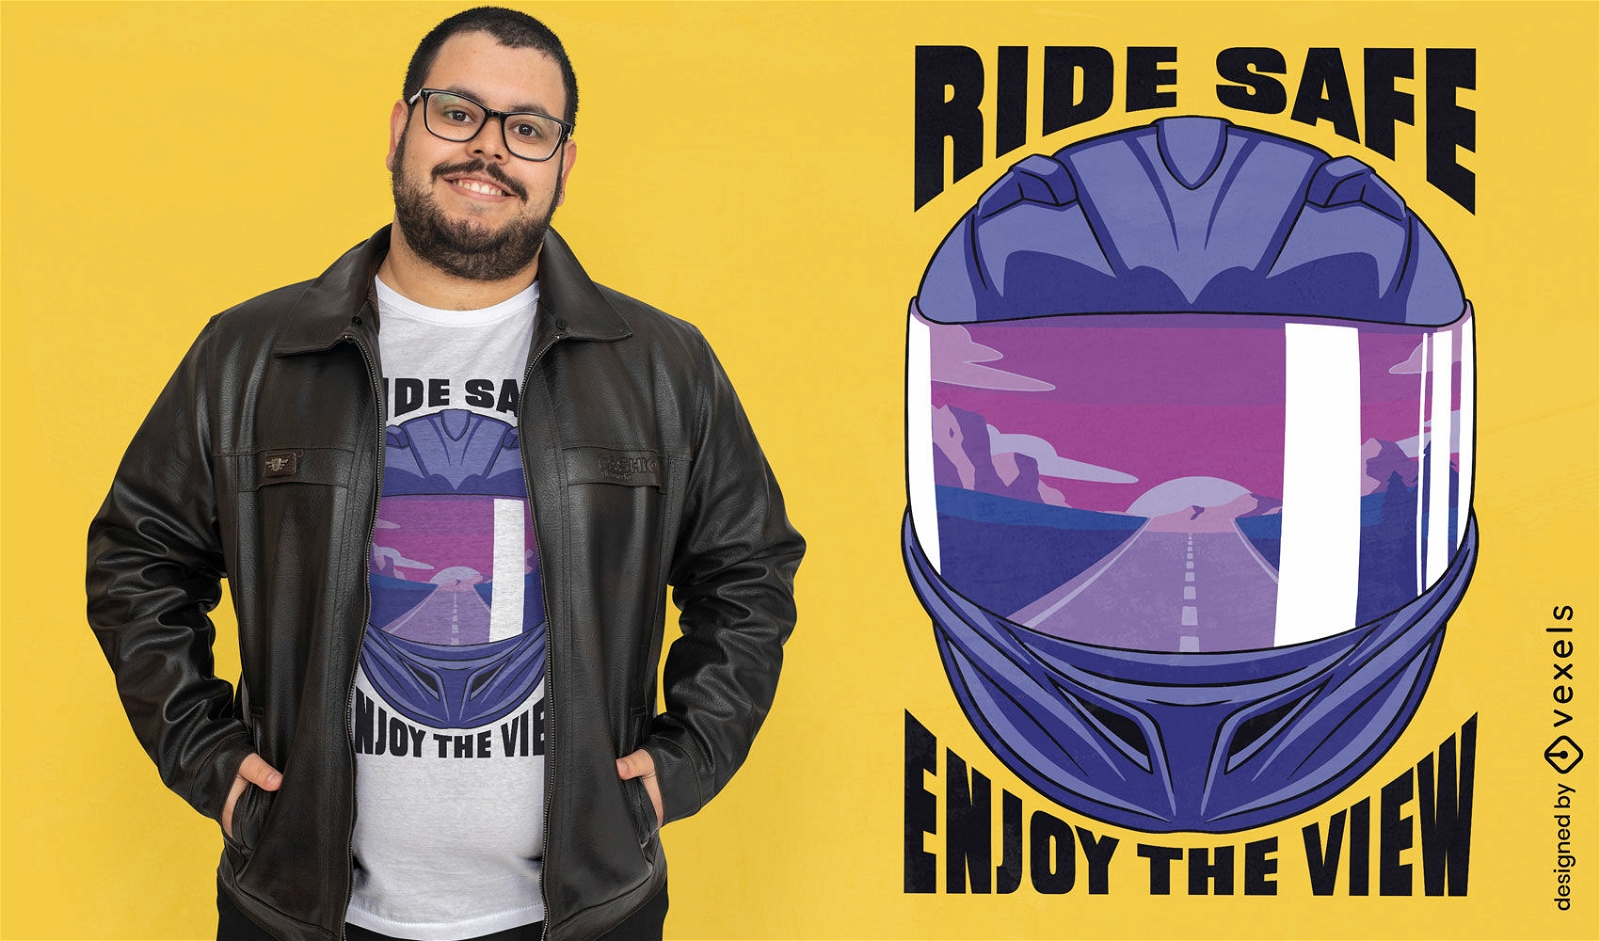 Fahren Sie sicher und genie?en Sie das Biker-T-Shirt-Design